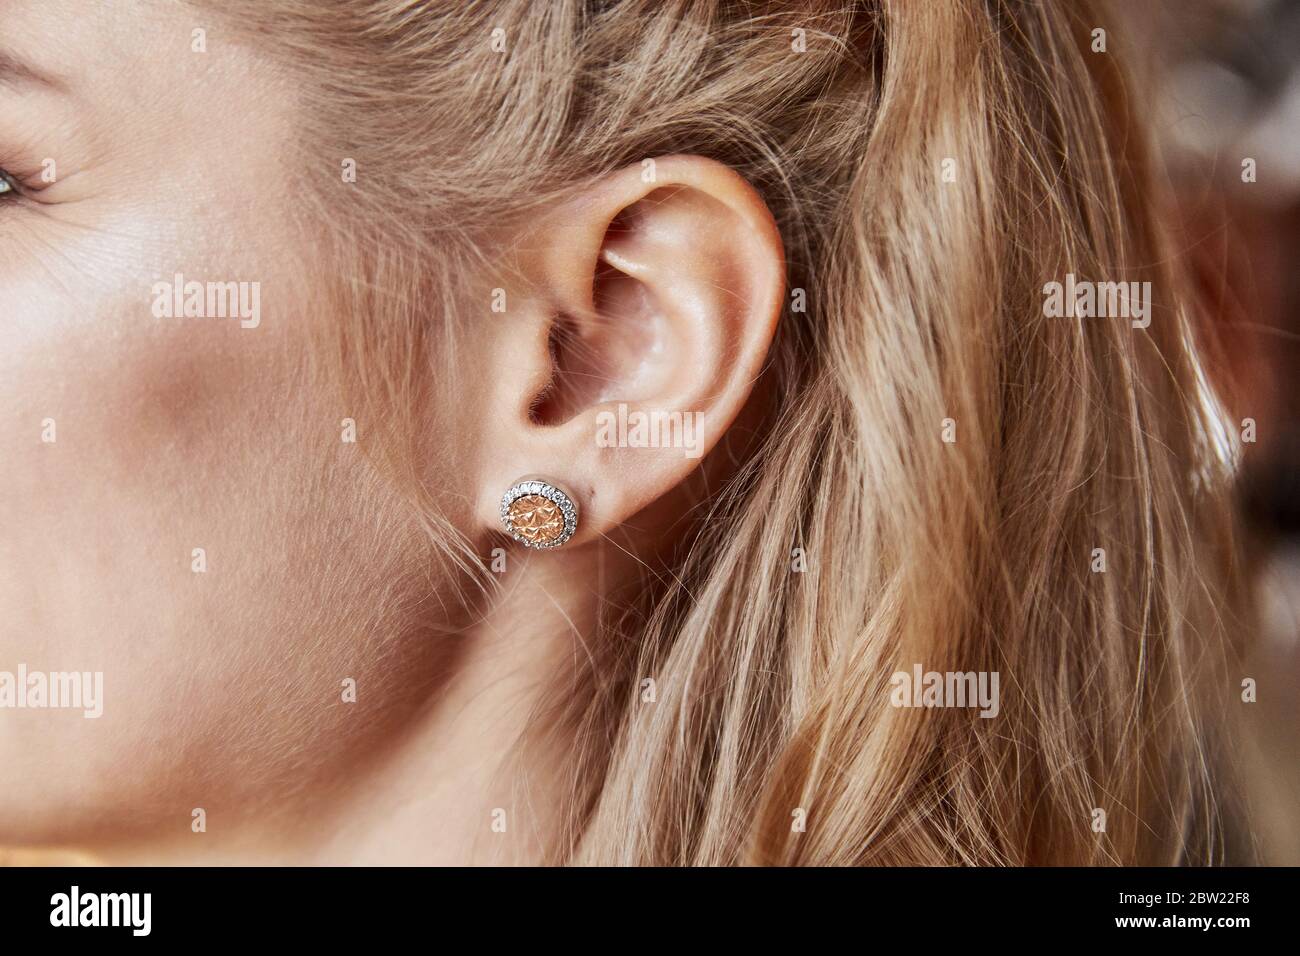 Femme portant des belles boucles d'oreilles de luxe Photo Stock - Alamy